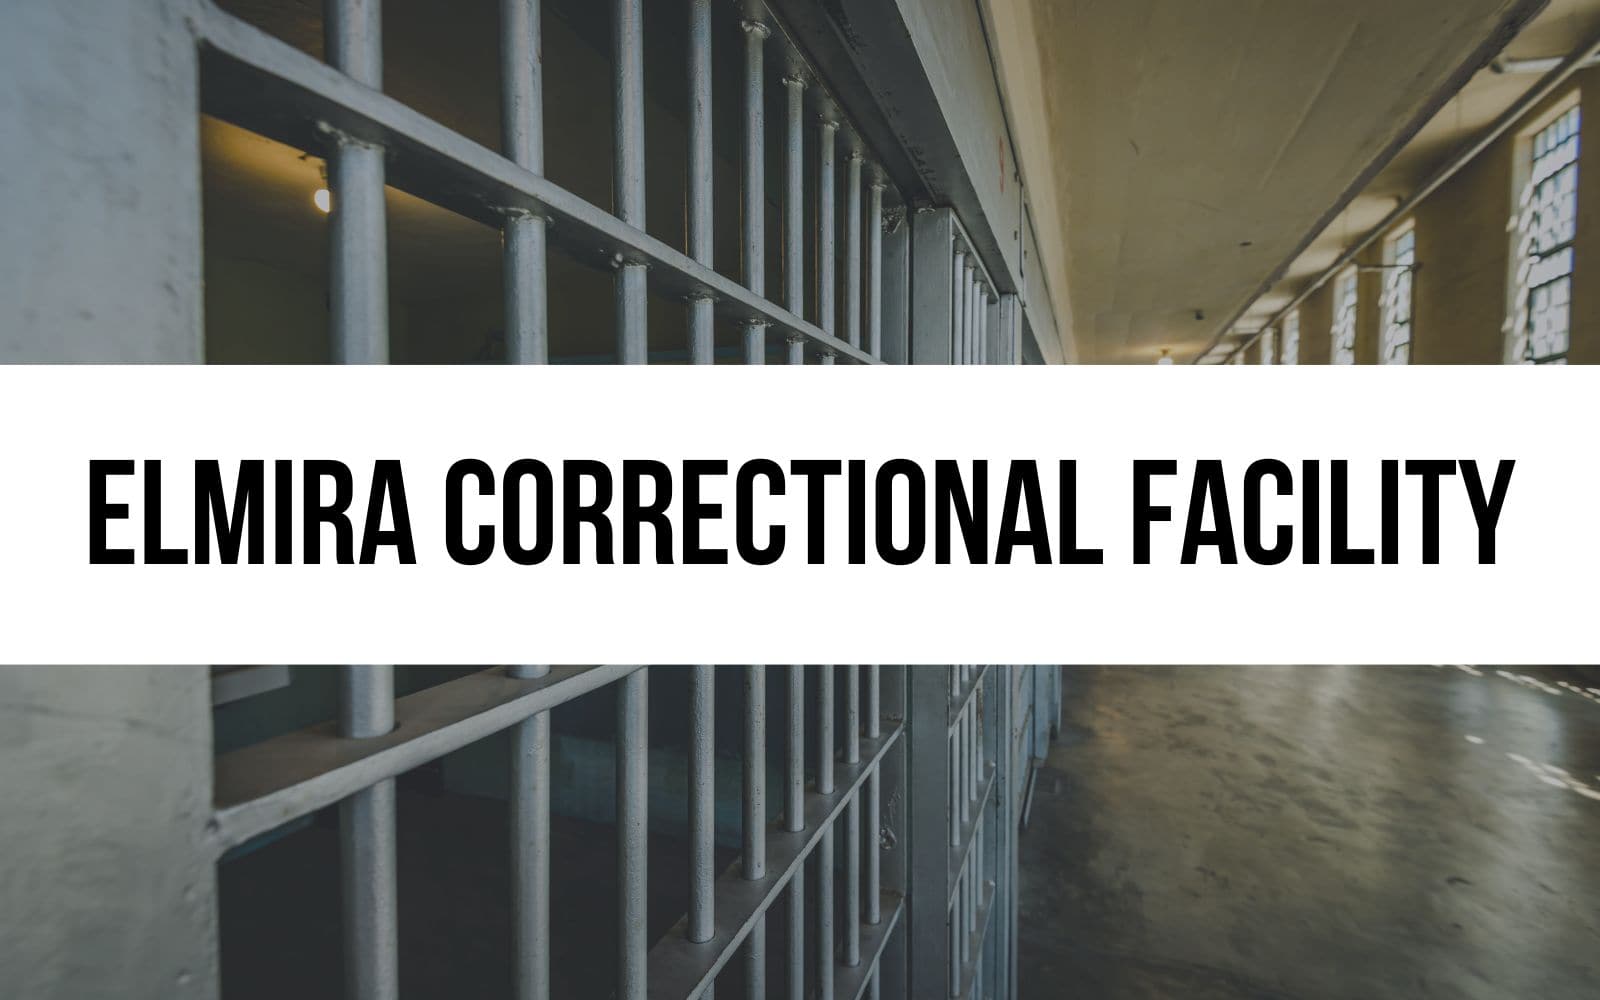 Elmira Correctional Facility